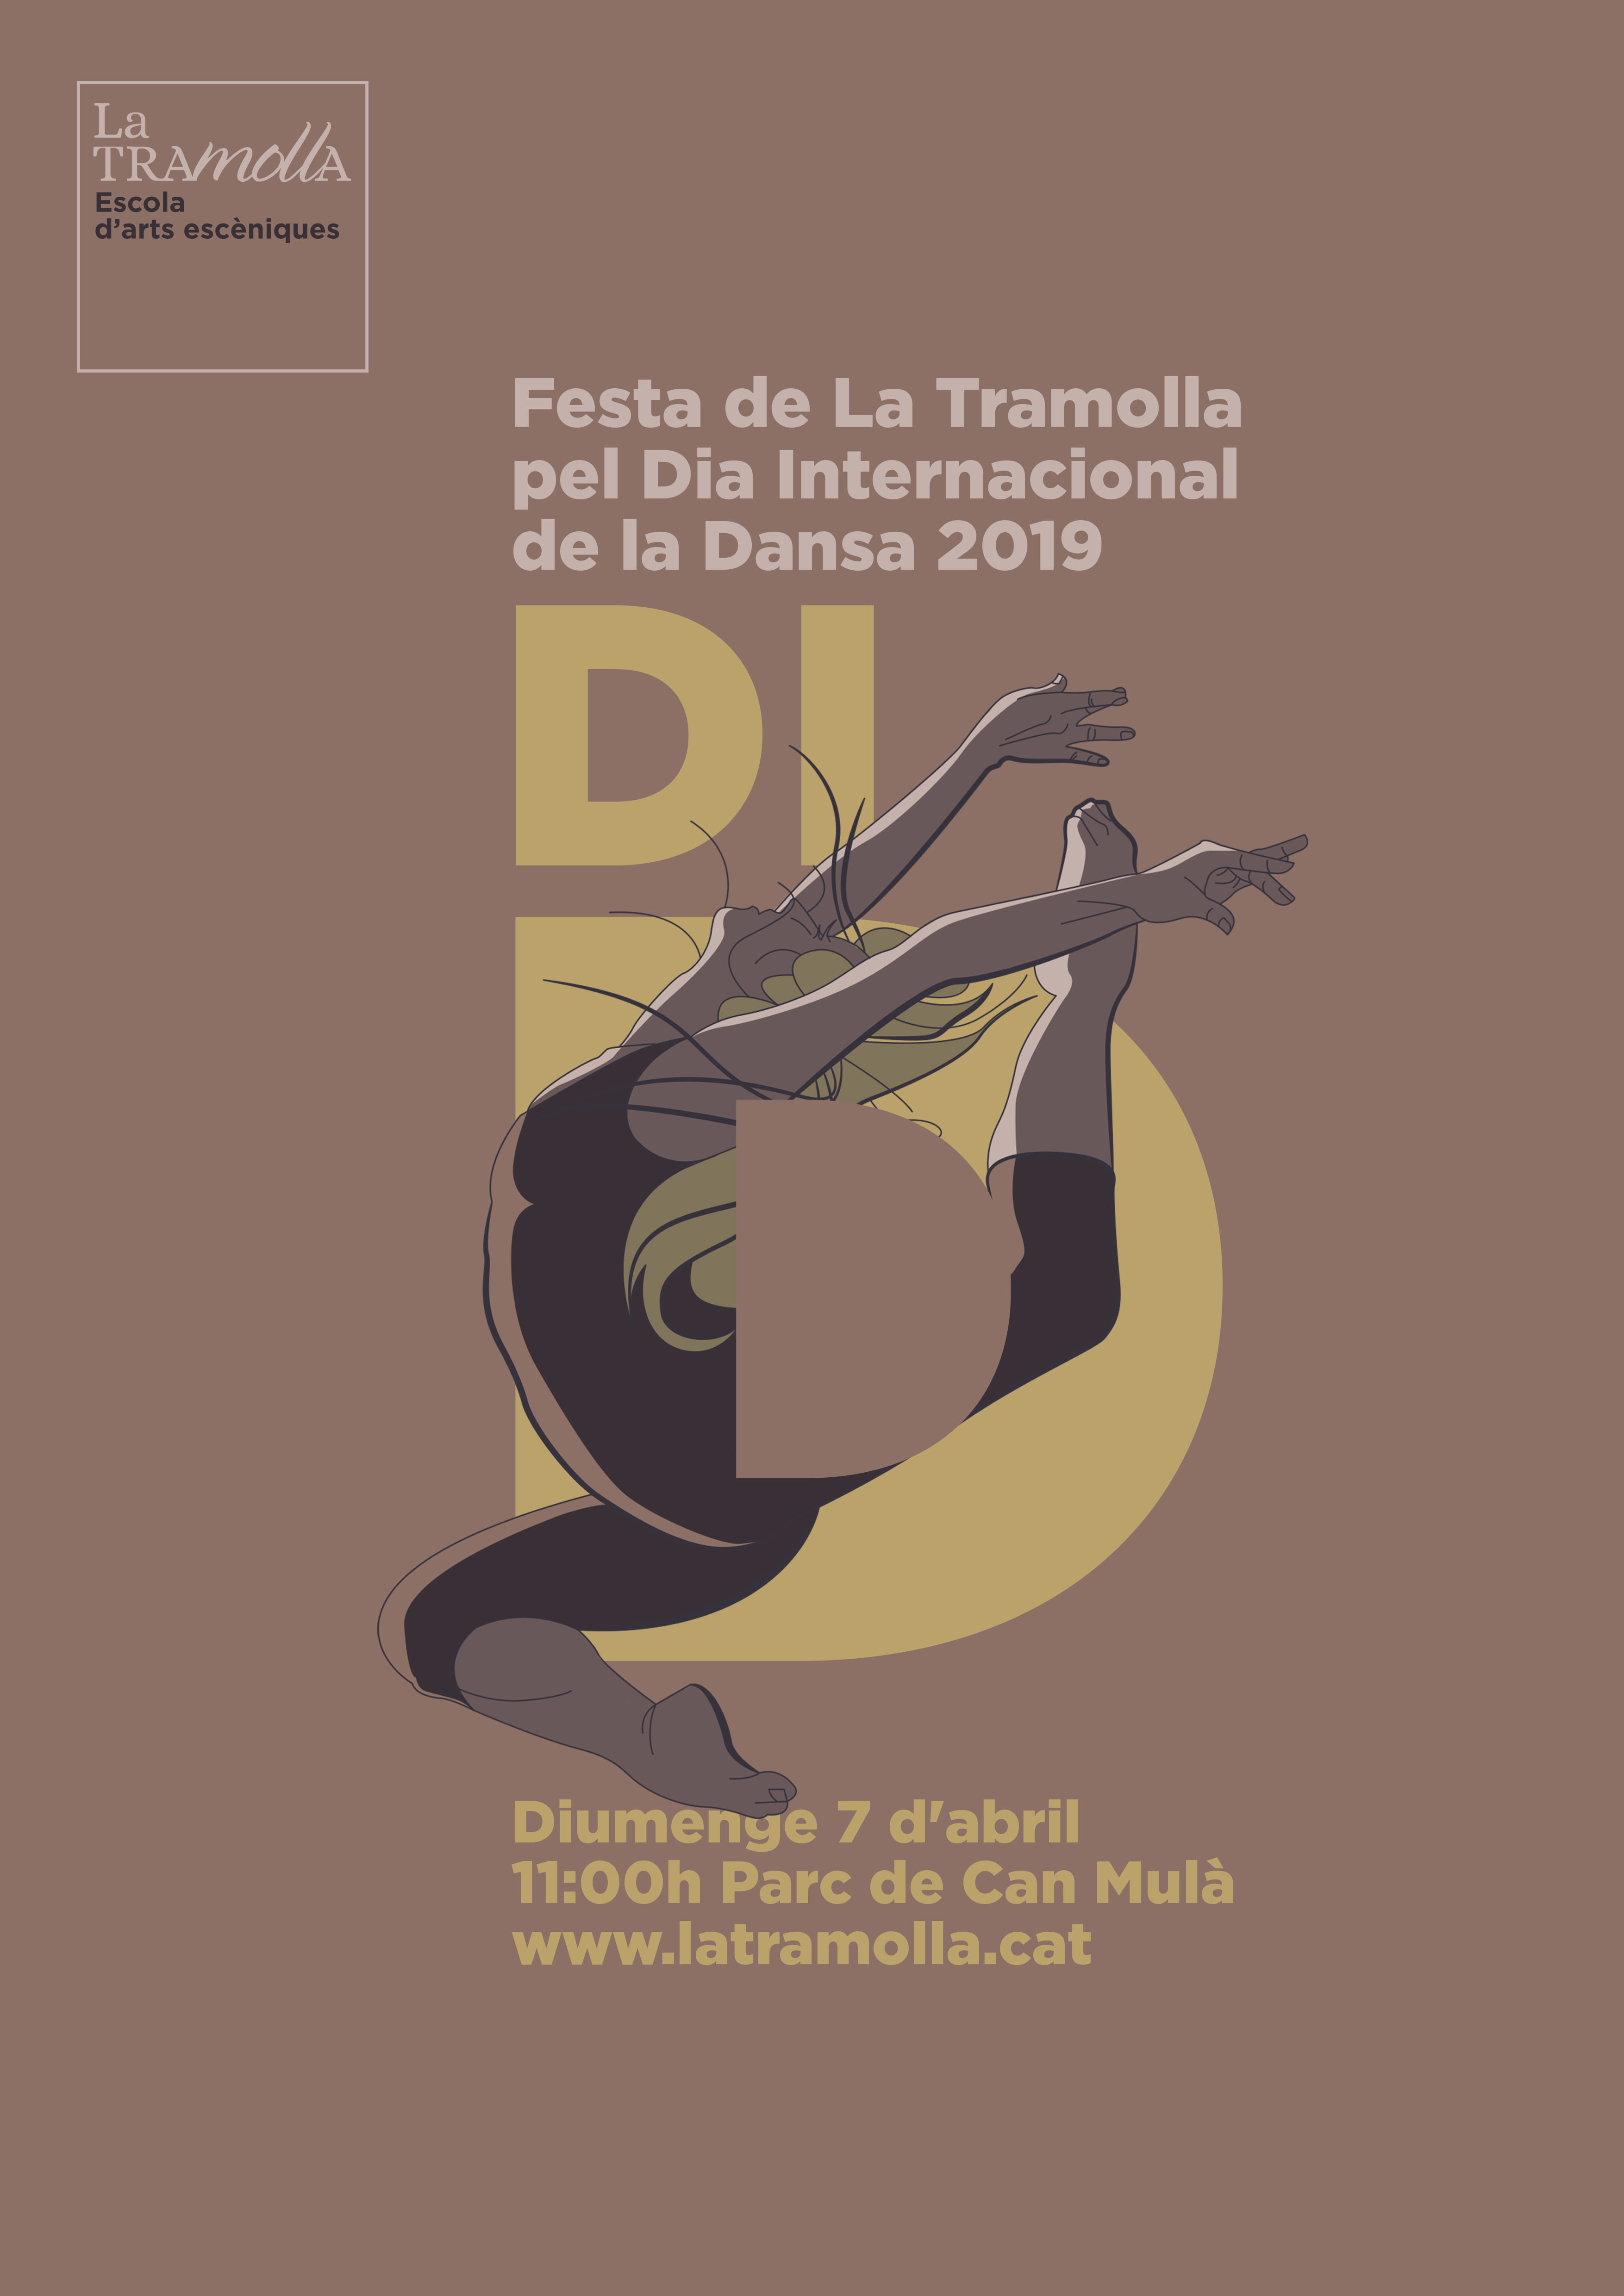 Aquest diumenge celebrem la nostra festa anual pel Dia Internacional de la Dansa a Can Mulà!